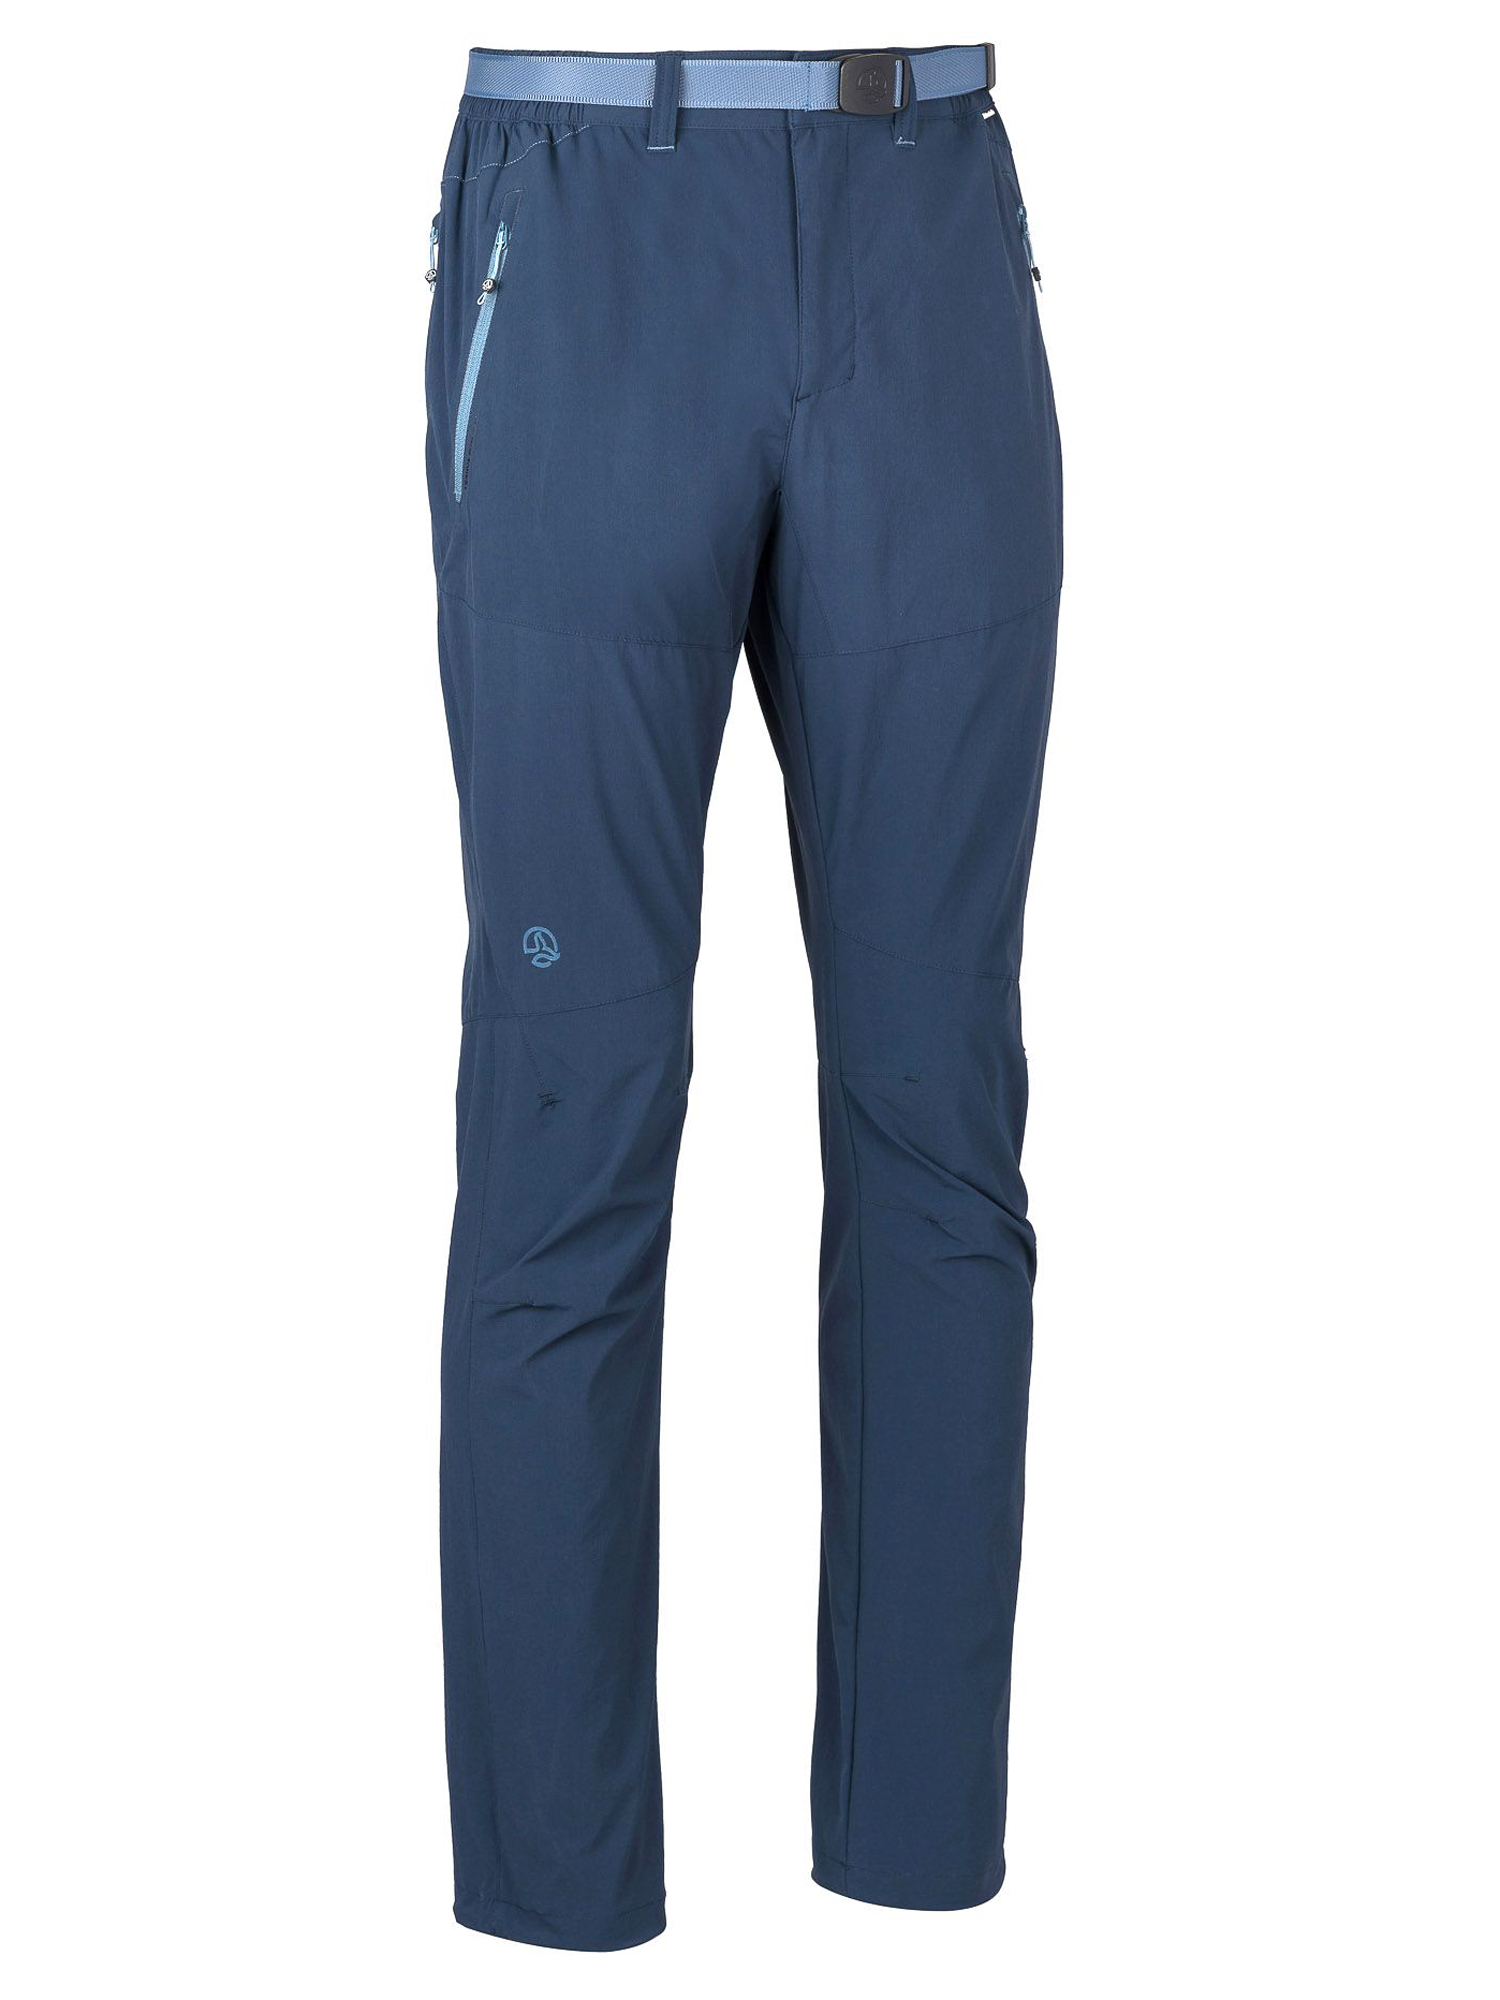 Спортивные брюки мужские Ternua Friz Pt M синие M